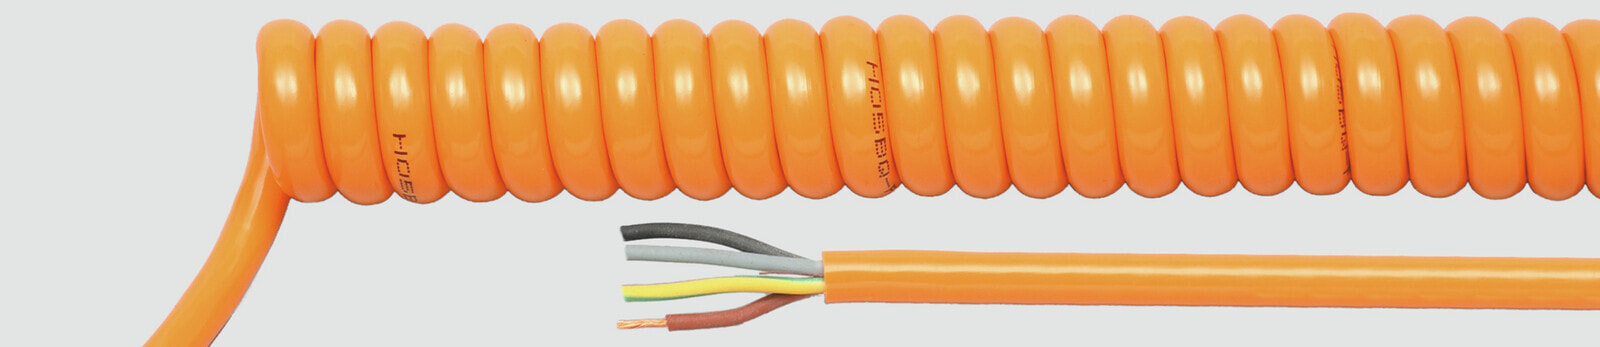 Helukabel 85314 - Low voltage cable - Orange - Cooper - 1 mm² - 446.6 kg/km - 500 V